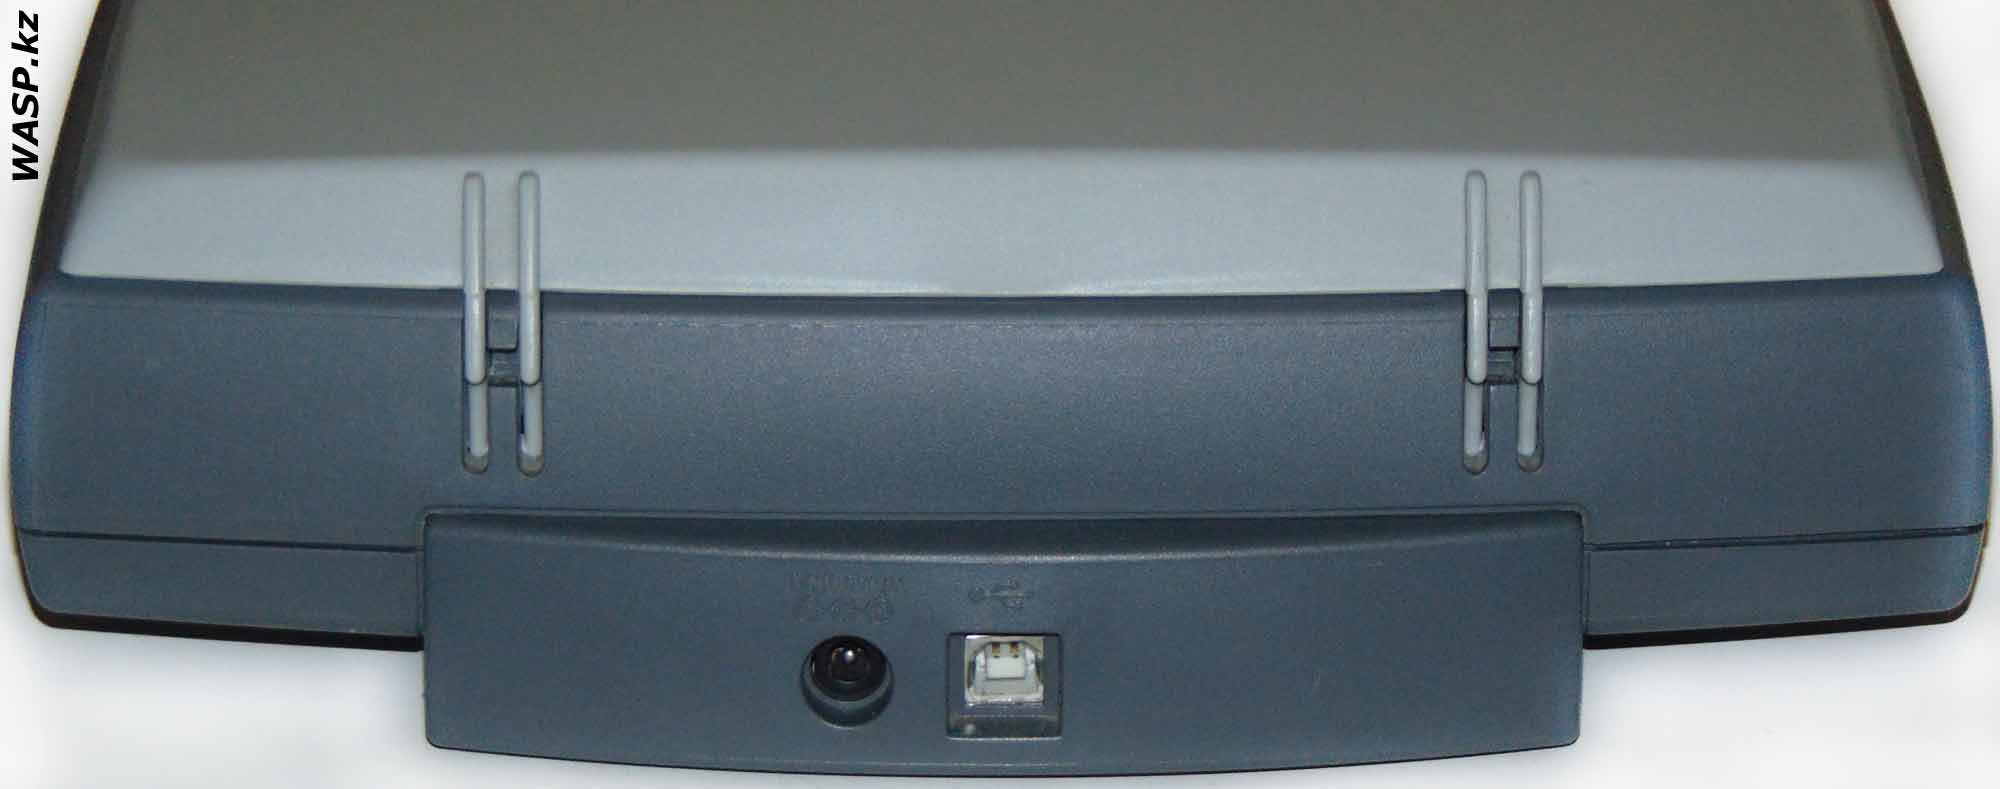 Epson Perfection 660 подключение сканера